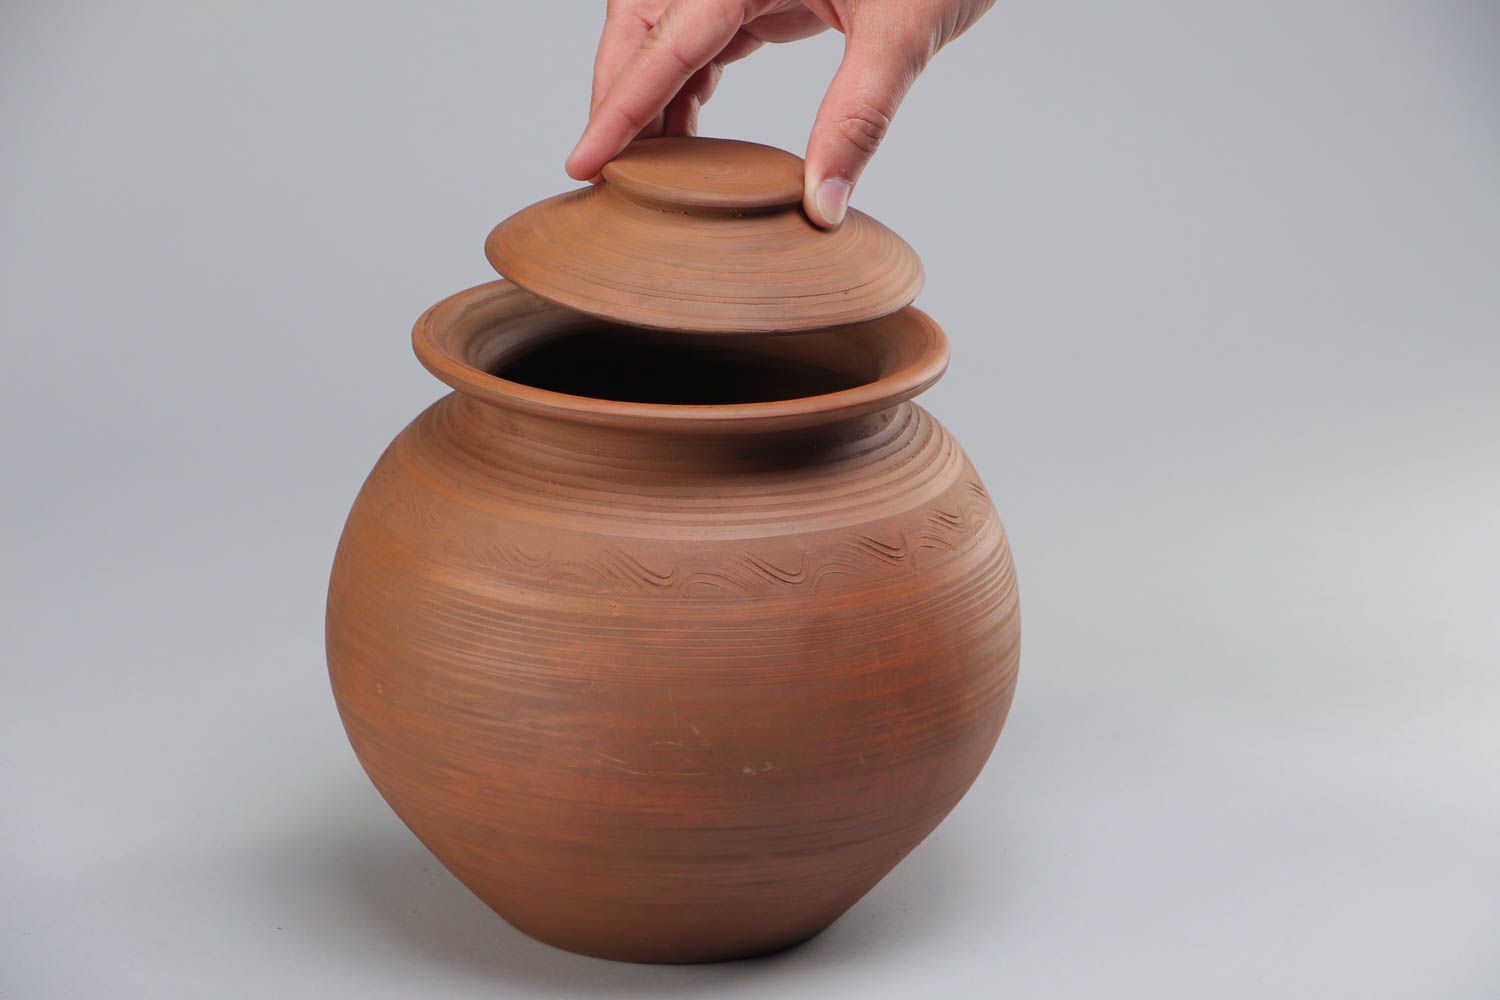 Grand pot en céramique pour cuisiner fait main 3 litres brun avec couvercle photo 5